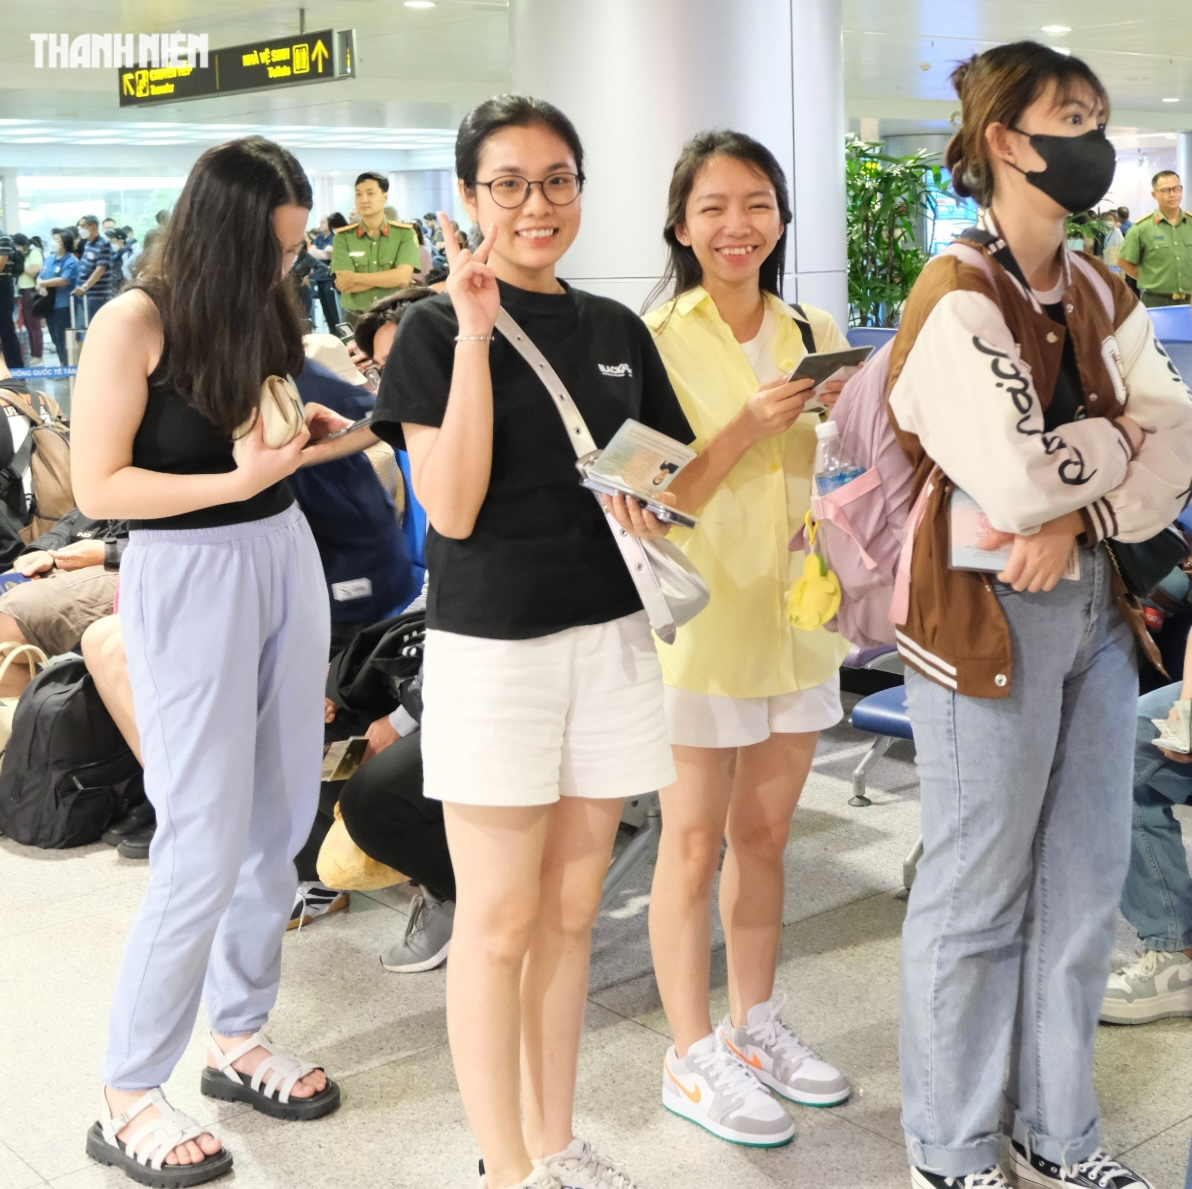 Tân Sơn Nhất chính thức thử nghiệm scan passport cho người Việt, nhập cảnh chỉ 30 giây - Ảnh 6.